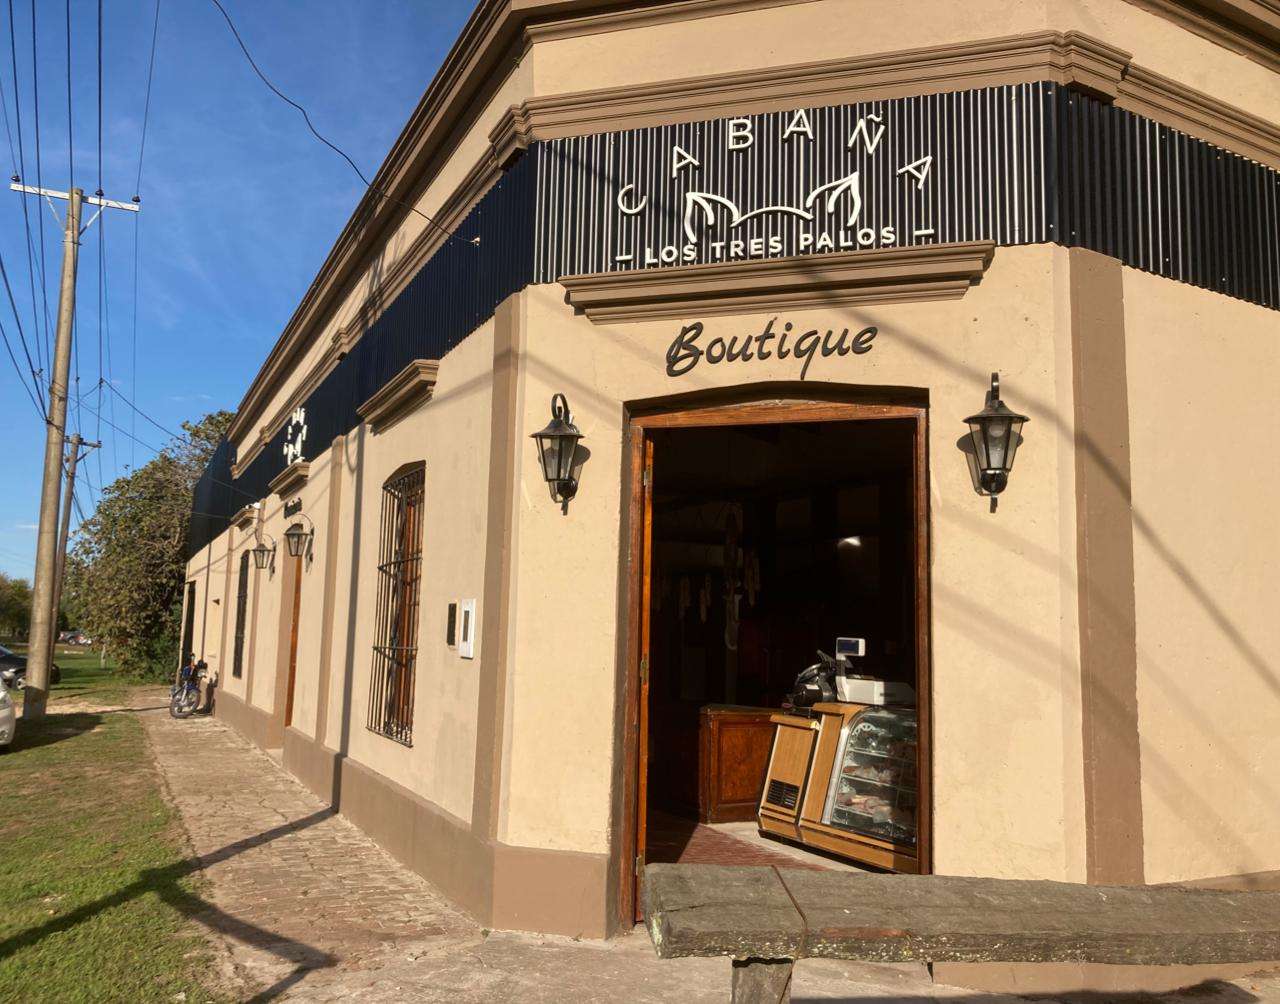 Cabaña Los Tres Palos abrió su carnicería- boutique